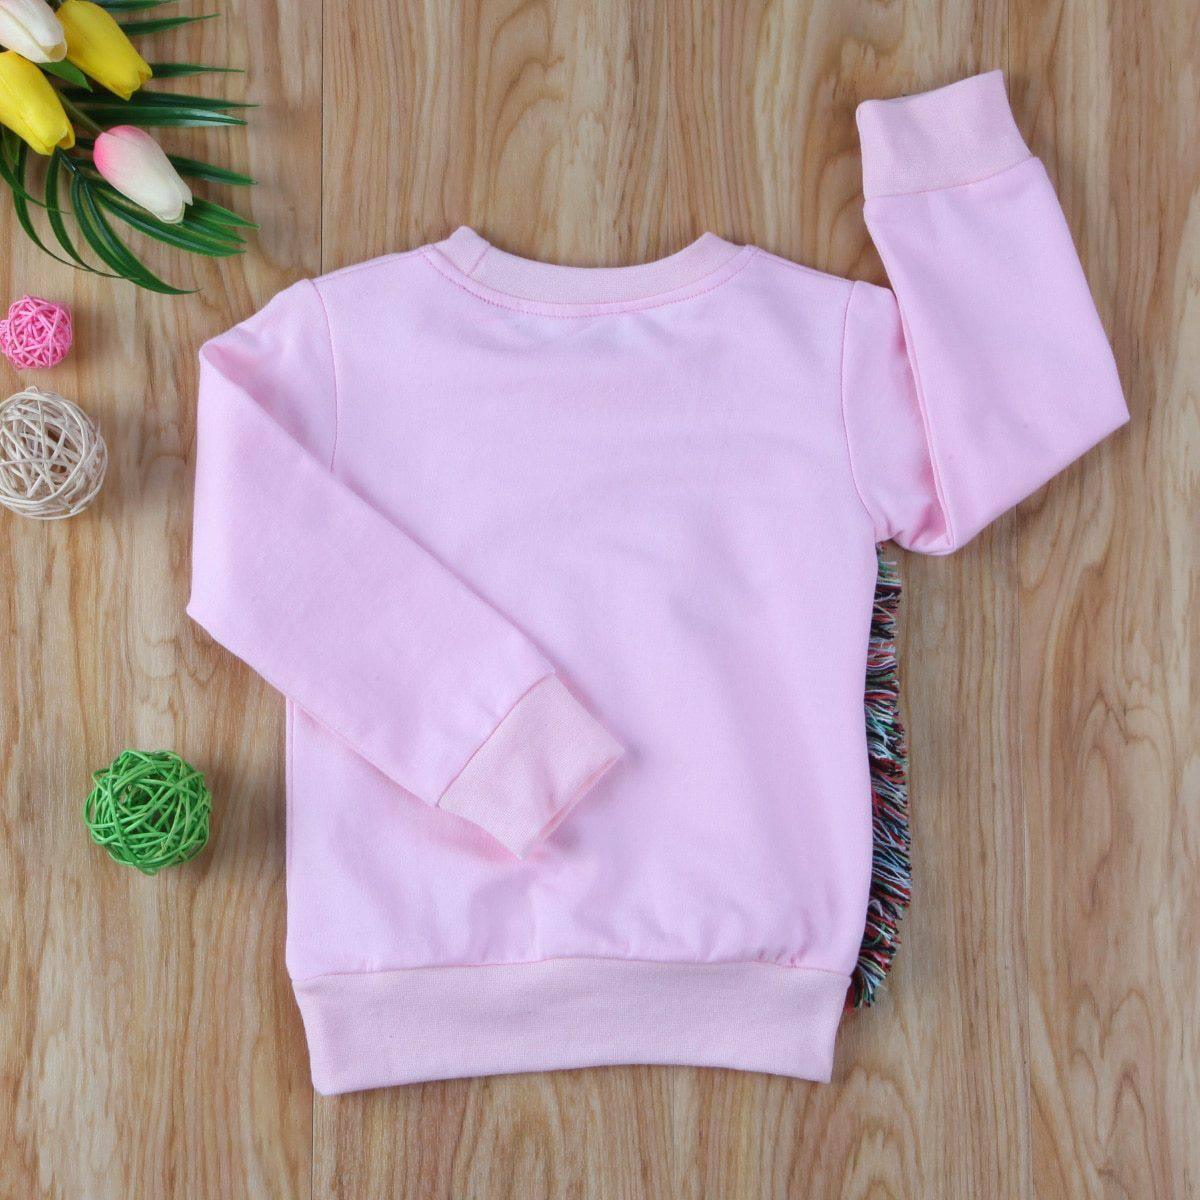 Pink Unicorn Sweater for Kids - Unicorn